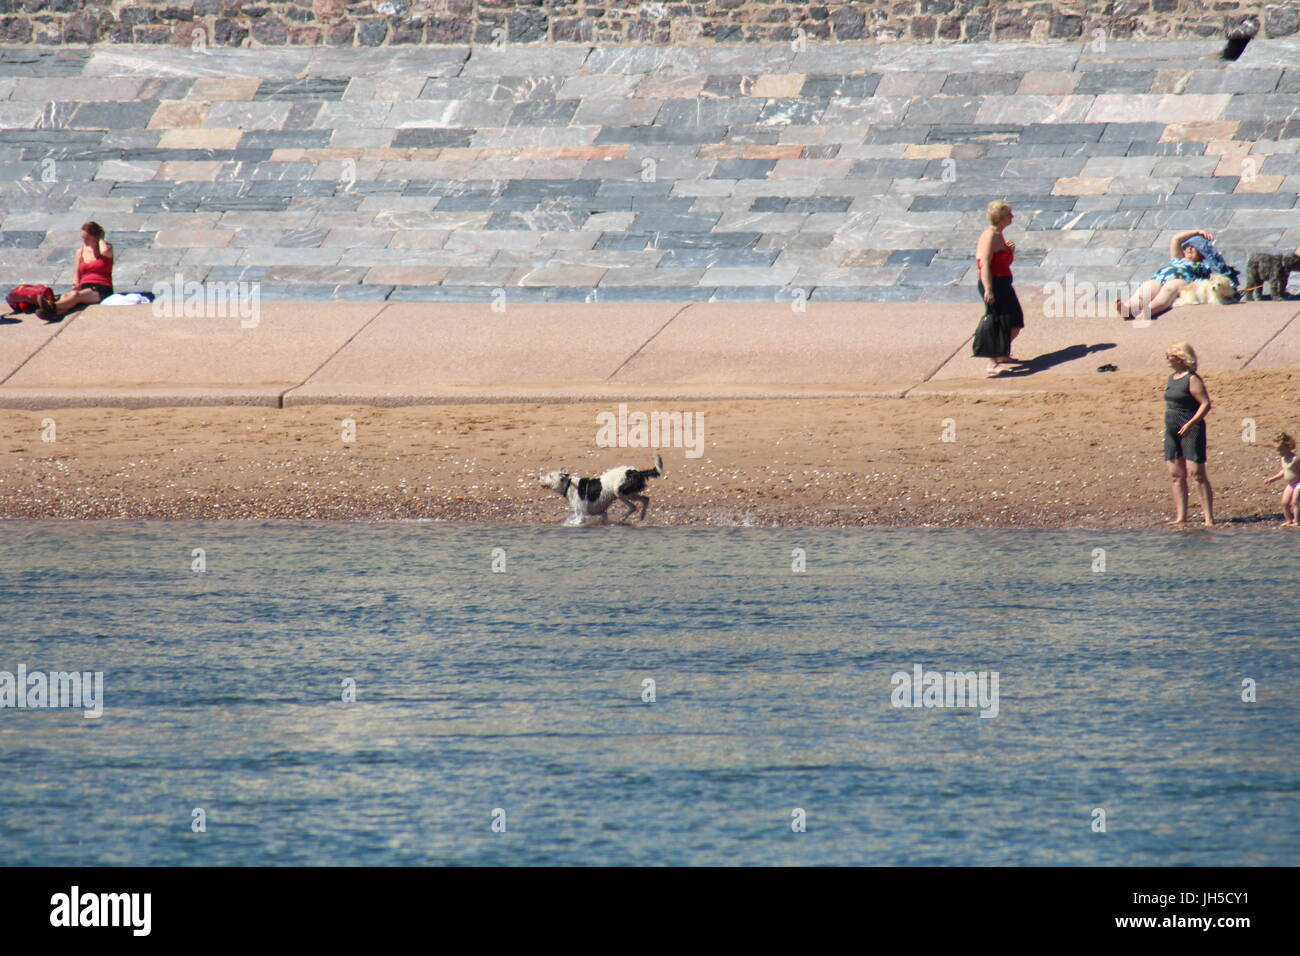 Dog on beach, plage de chien, chien qui court sur la plage, sur l'interdiction des chiens plage, mer, plages, chien chien amical friendly beach, littoral, la plage, plage, Royaume-Uni Banque D'Images